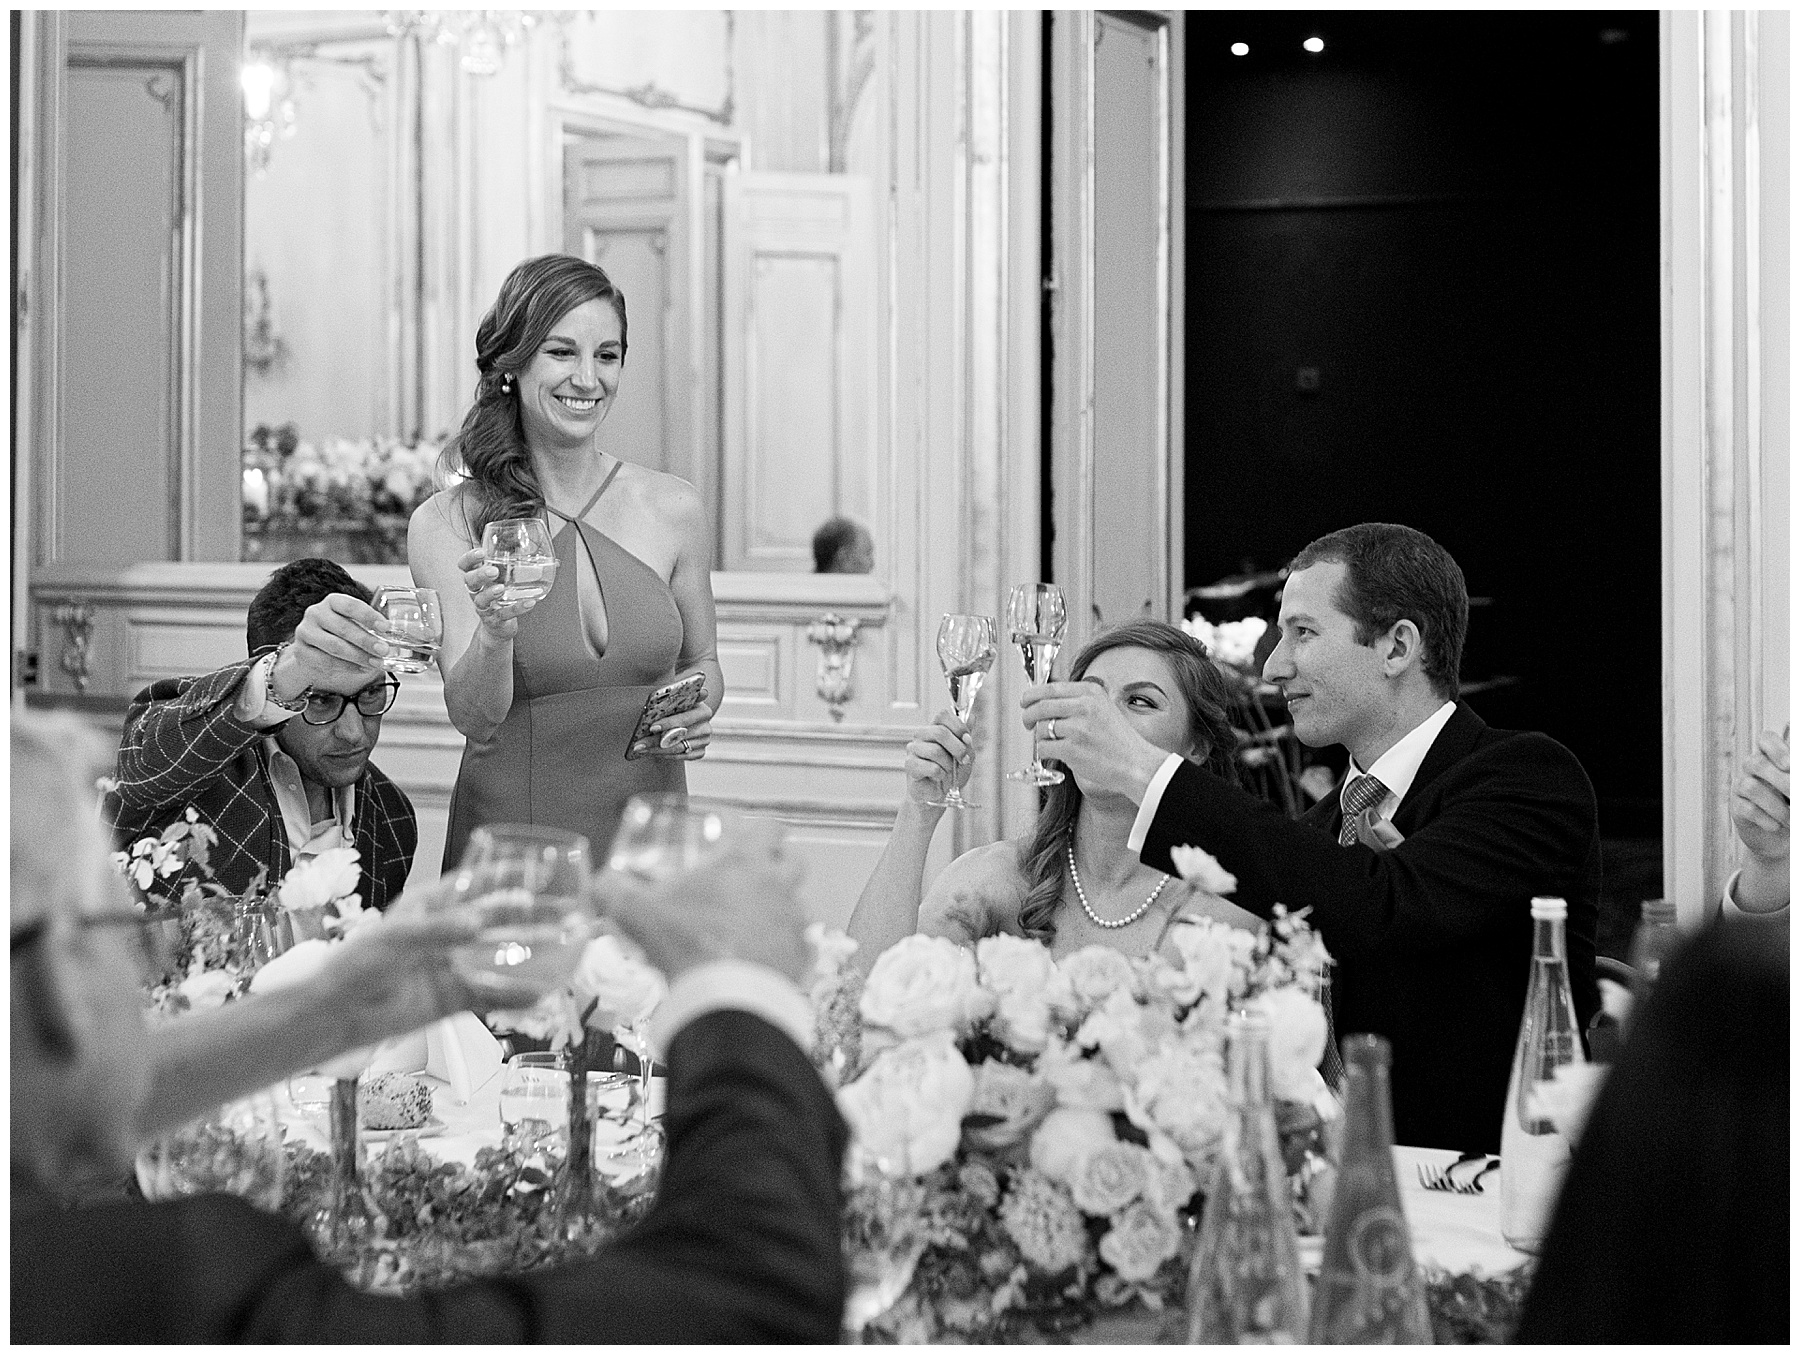 Paris Wedding Photographer, Stephanie Vegliante Photography